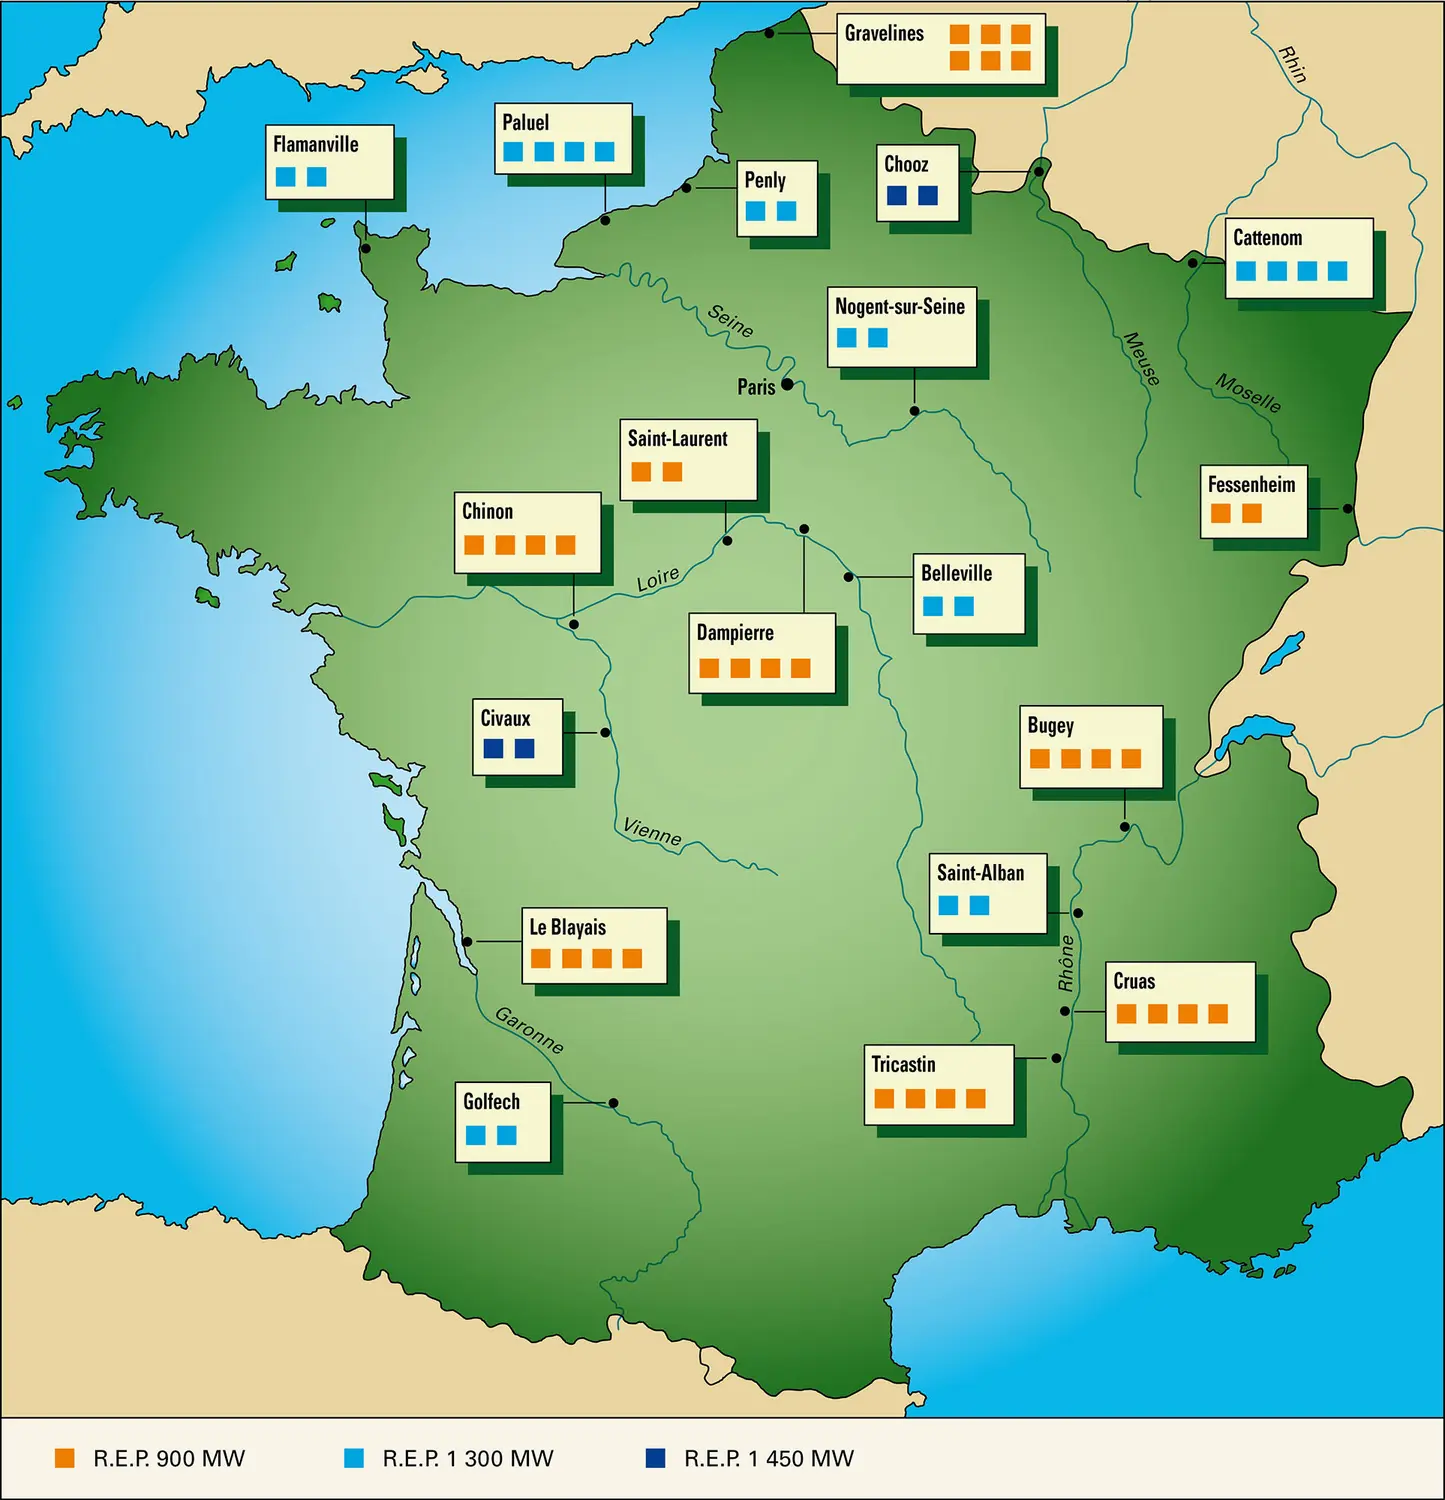 Les centrales nucléaires françaises